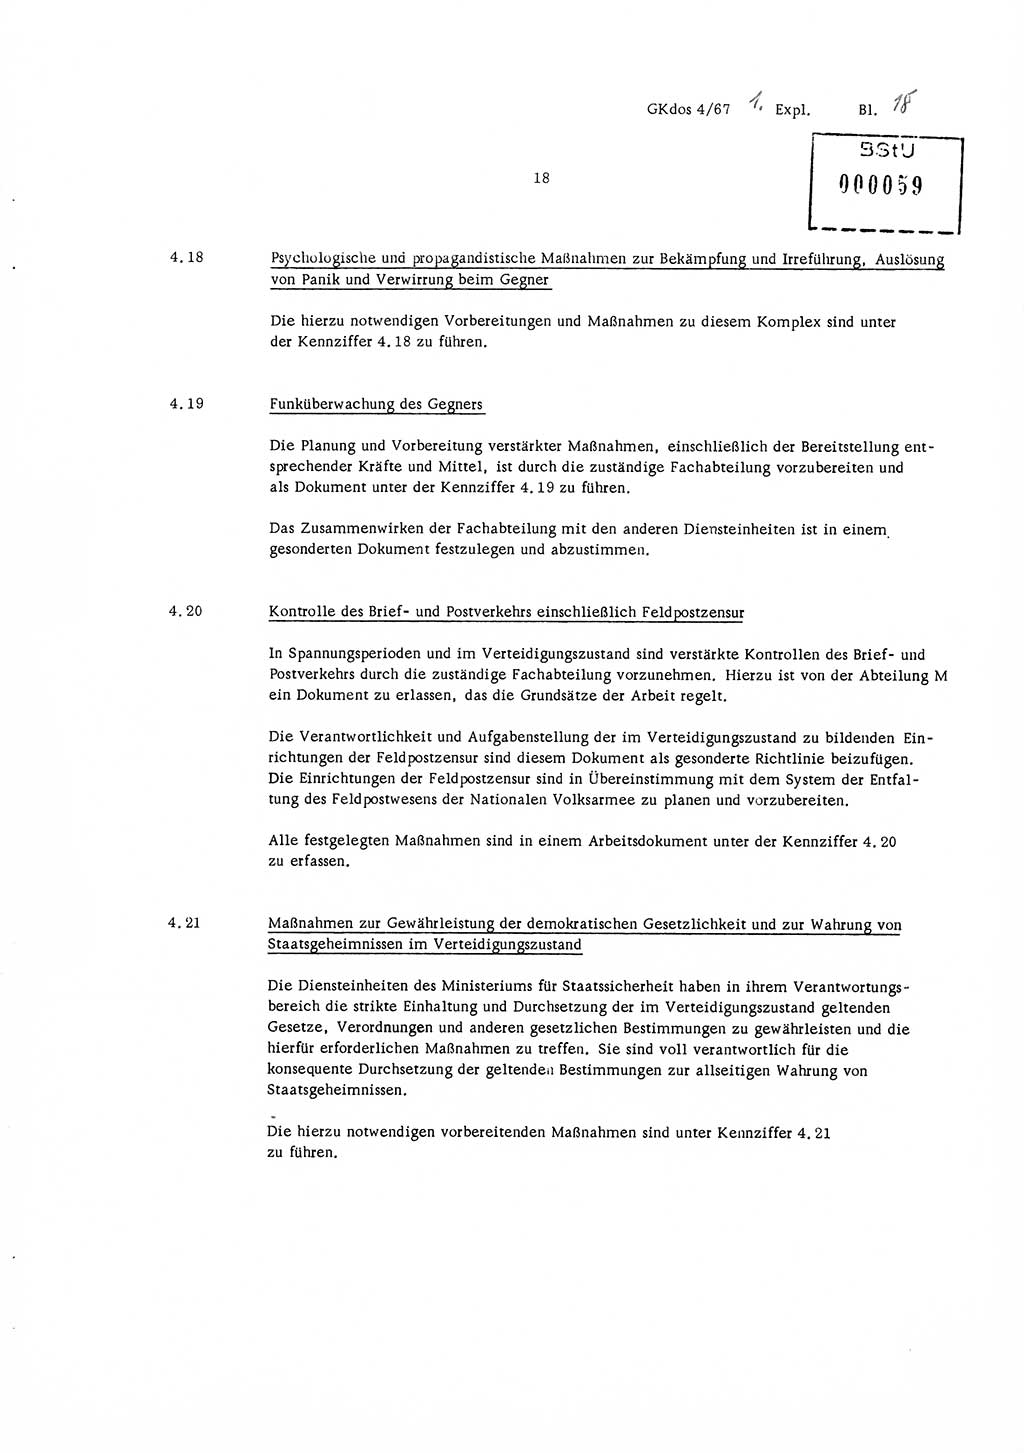 Durchführungsbestimmung Nr. 1 über die spezifisch-operative Mobilmachungsarbeit im Ministerium für Staatssicherheit (MfS) und in den nachgeordneten Diensteinheiten zur Direktive Nr. 4/67 des Ministers für Staatssicherheit, Deutsche Demokratische Republik (DDR), Ministerium für Staatssicherheit (MfS), Der Minister, Geheime Kommandosache (GKdos) 4/67, Berlin 1967, Seite 18 (DB 1 Dir. 1/67 DDR MfS Min. GKdos 4/67 1967, S. 18)